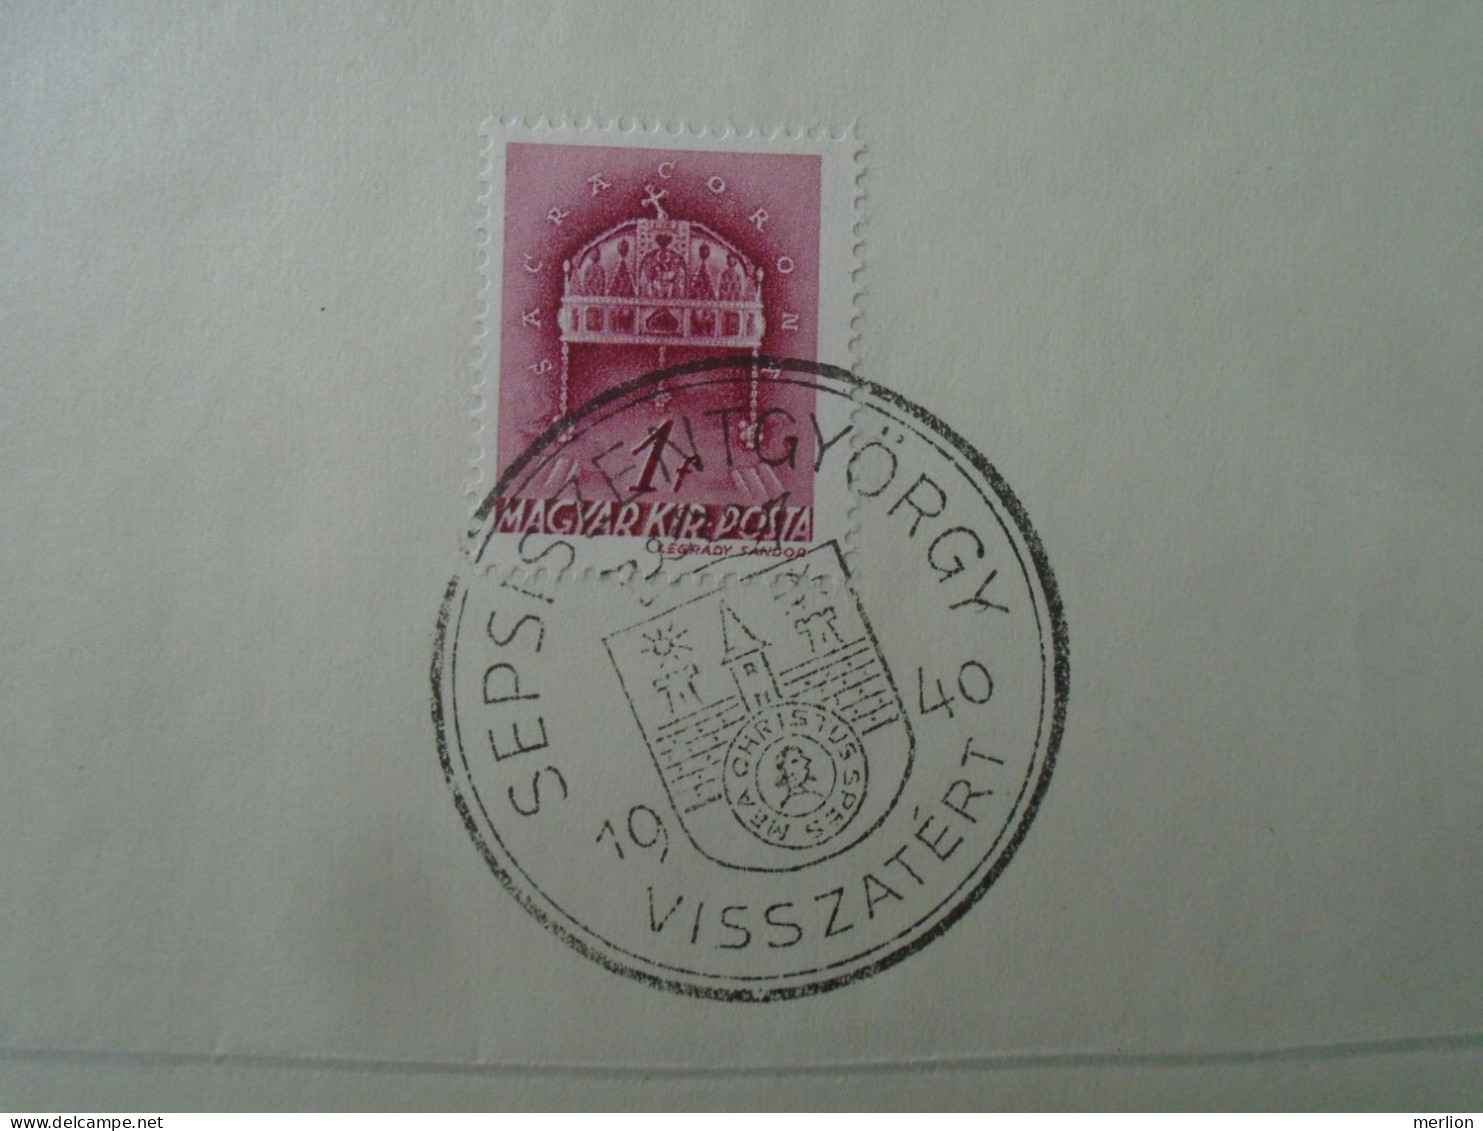 ZA451.19 Hungary-Székelyudvarhely, Csíkszereda, Sepsiszentgyörgy, Kézdivásárhely Visszatért -Commemorative Postmark 1940 - Poststempel (Marcophilie)